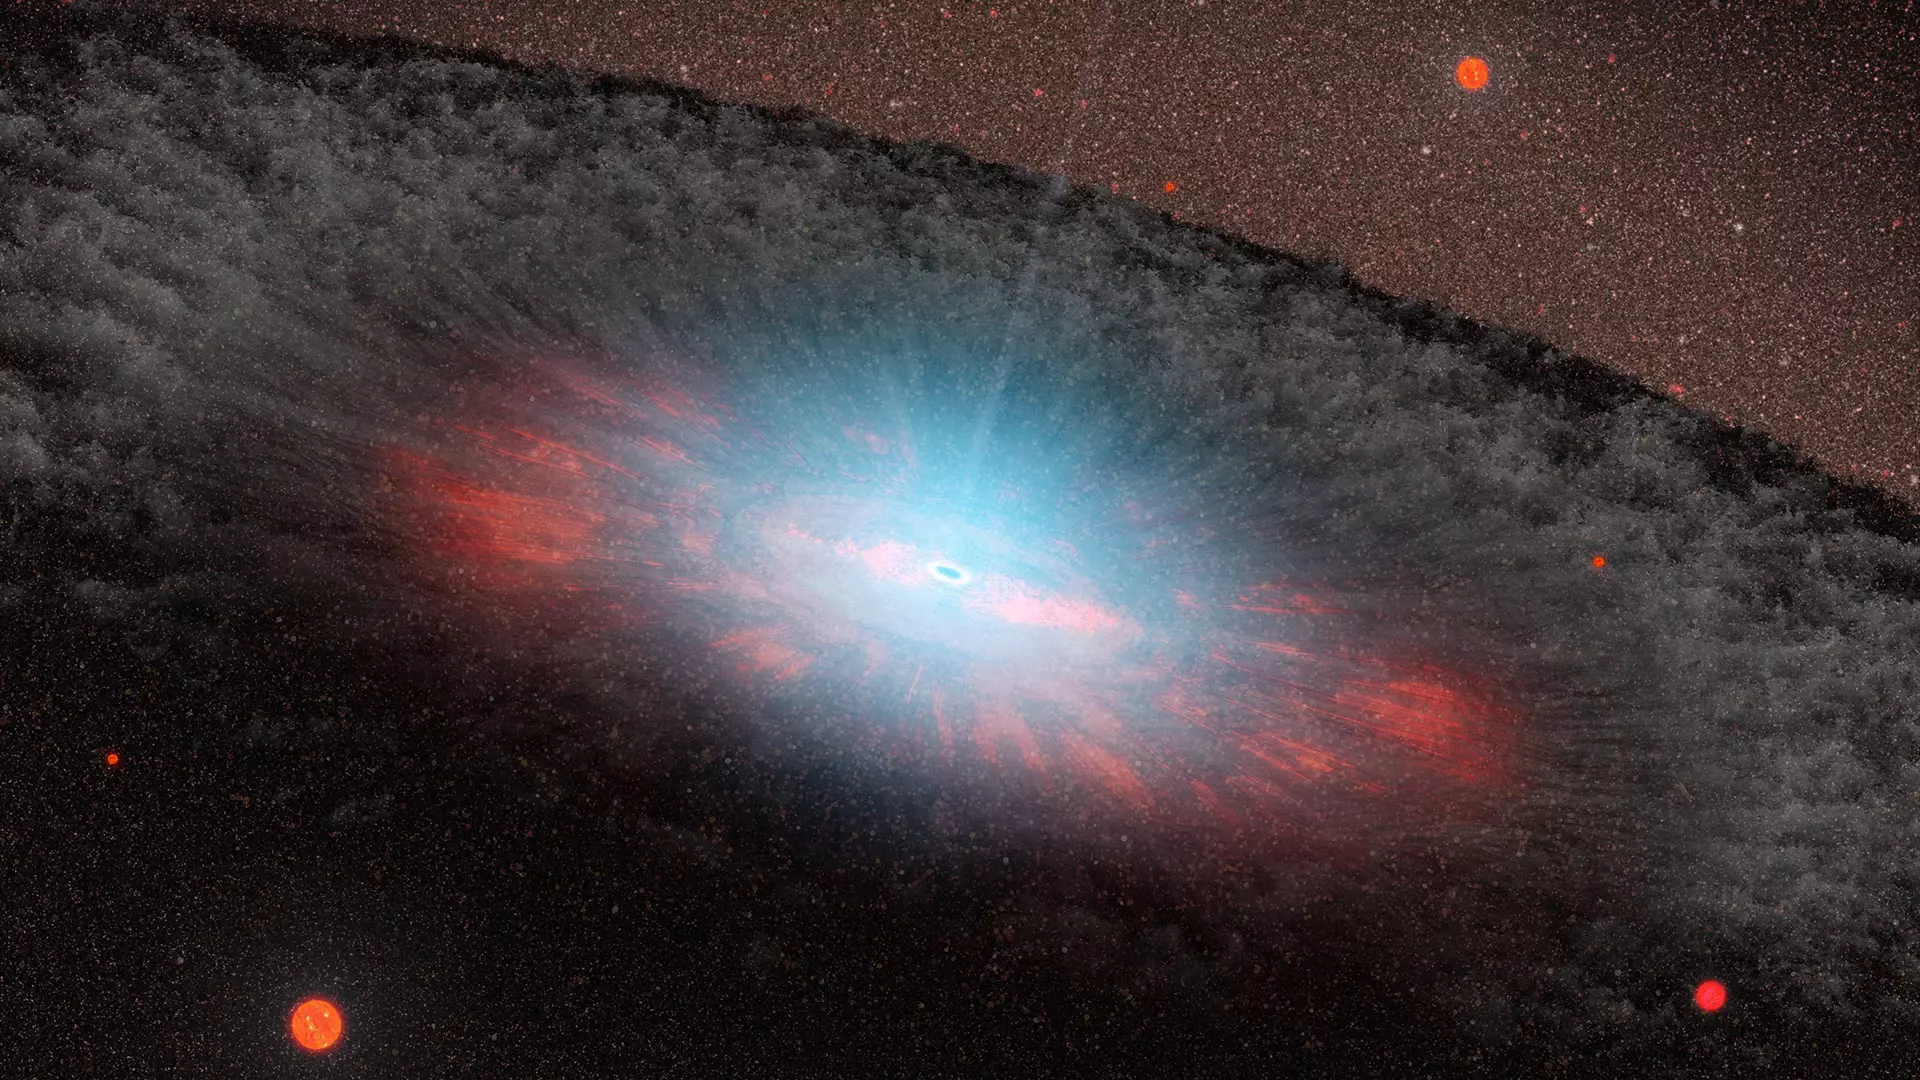 : Esta ilustración muestra un agujero negro supermasivo en el centro de casi todas las galaxias. Sin embargo, en ocasiones esos agujeros negros son derribados o completamente expulsados de sus galaxias.